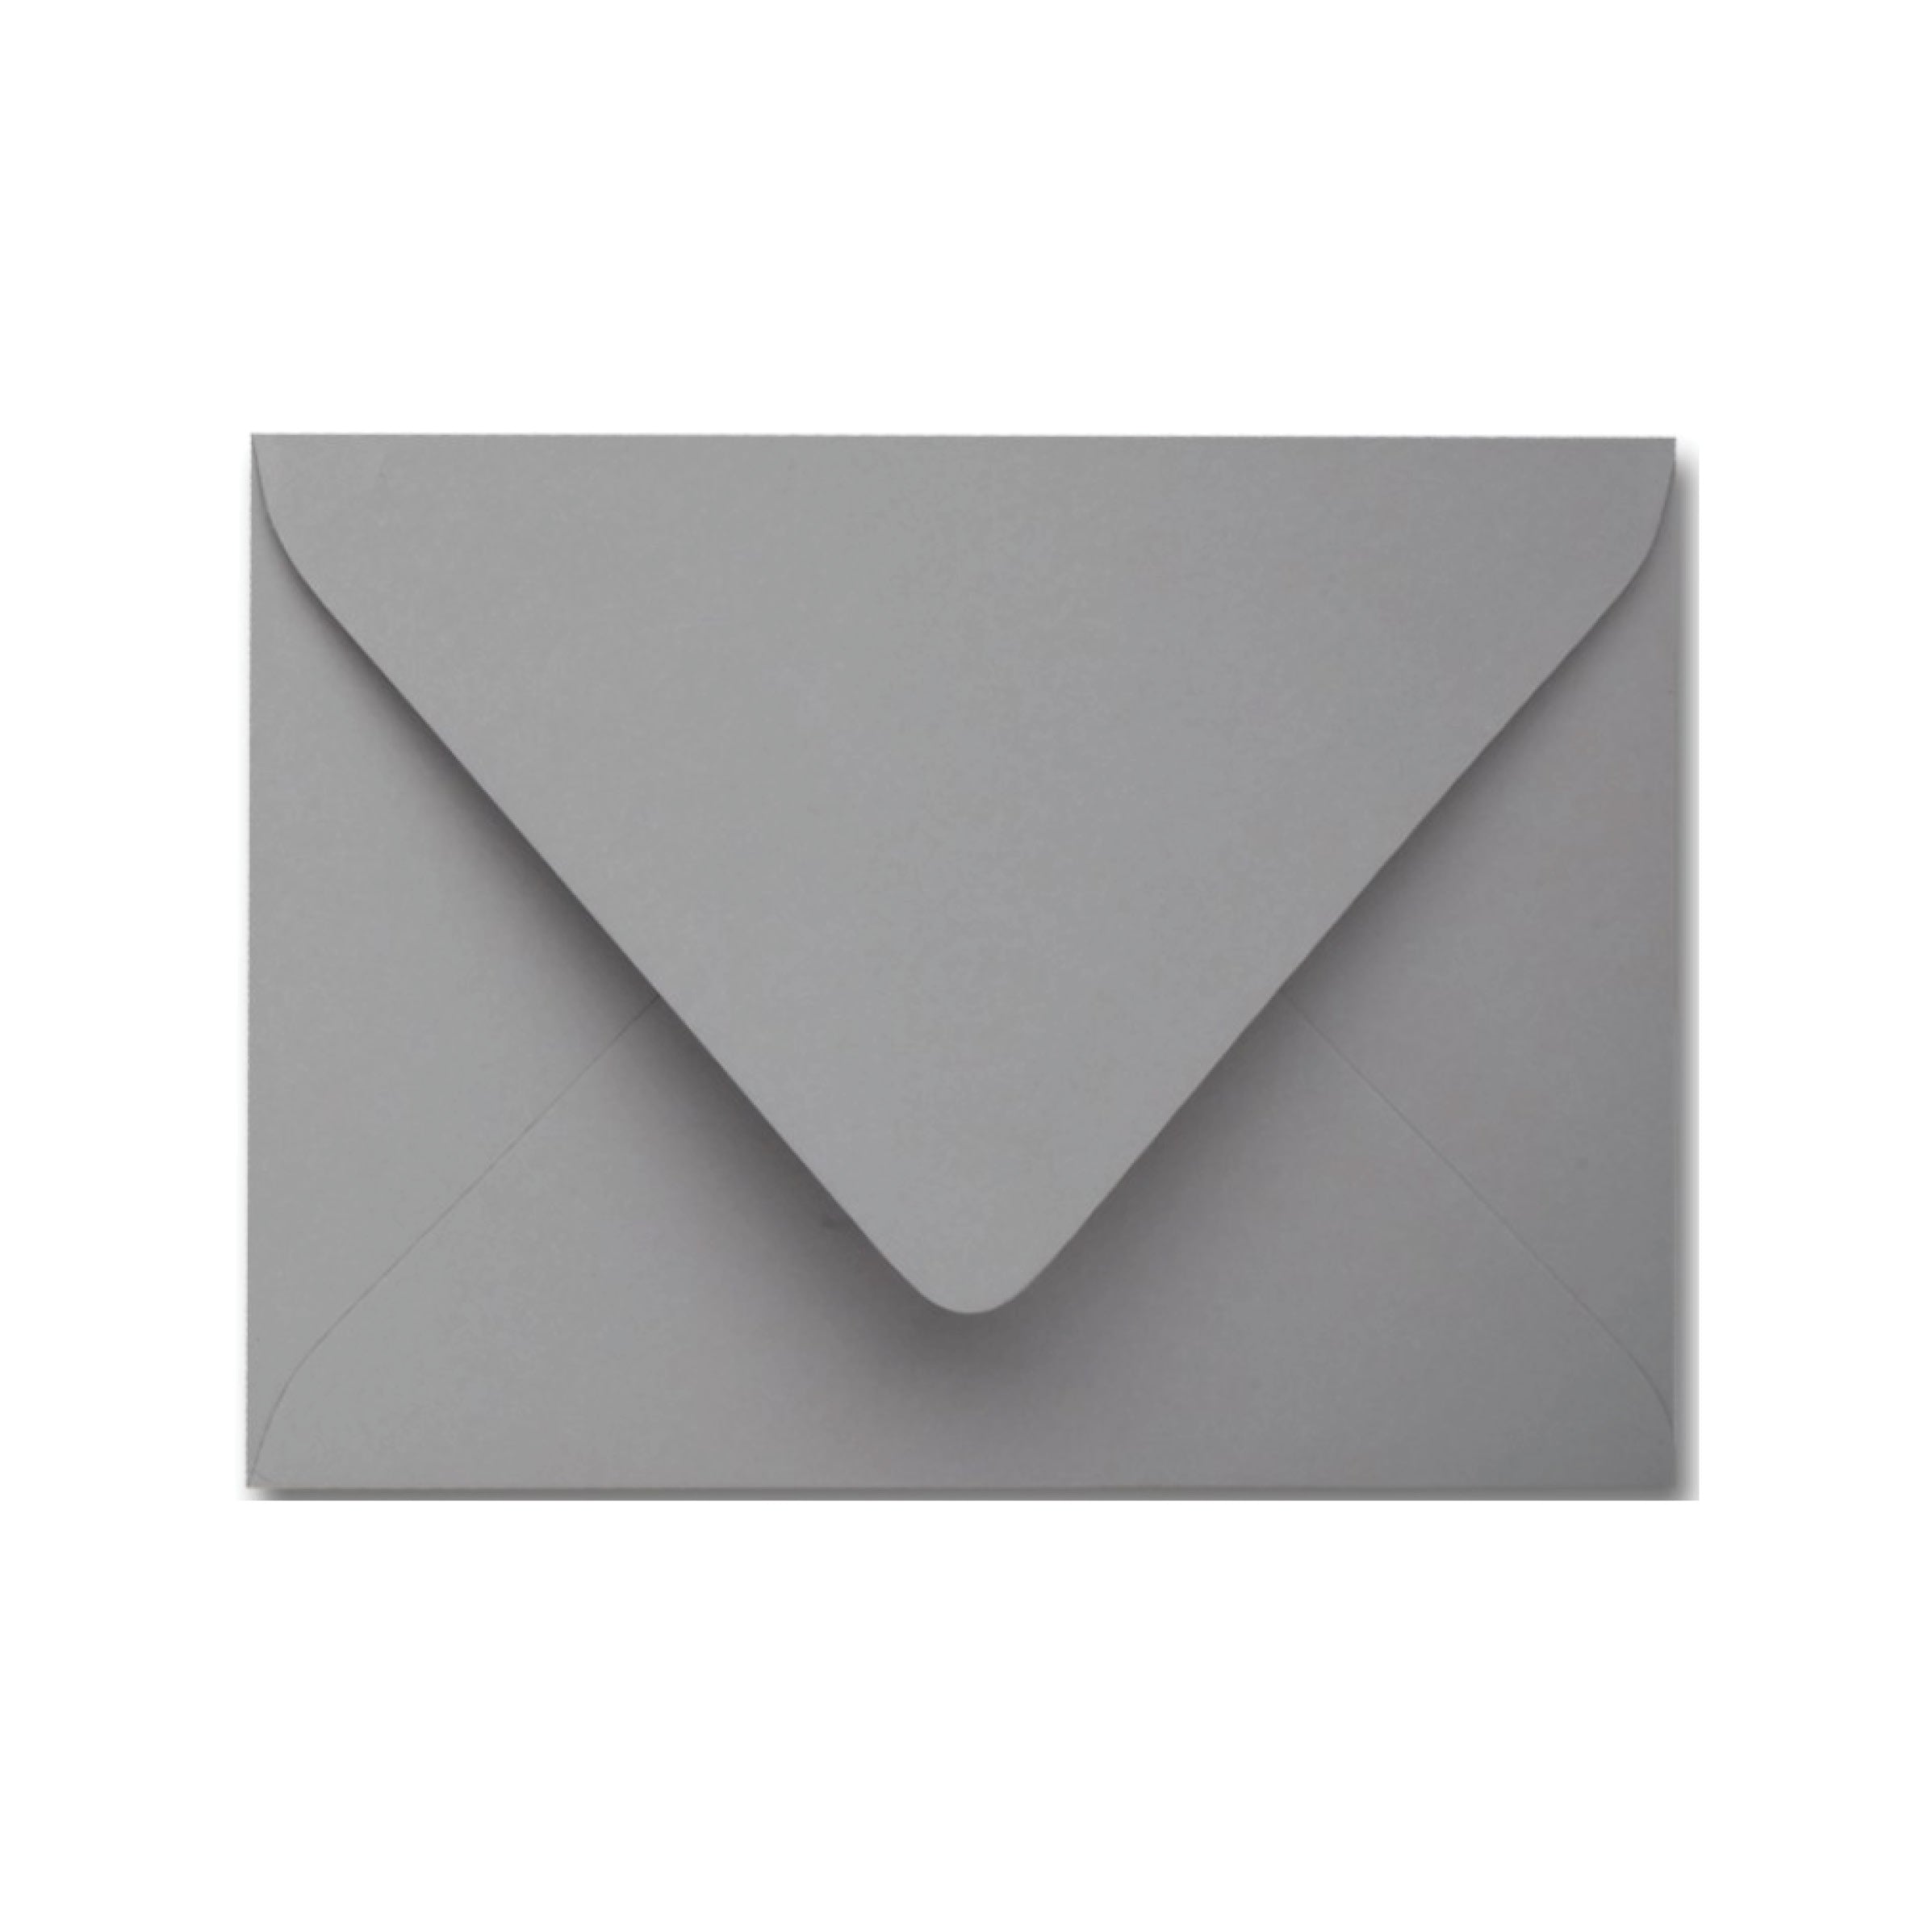 Gray Envelopes - Pack of 25